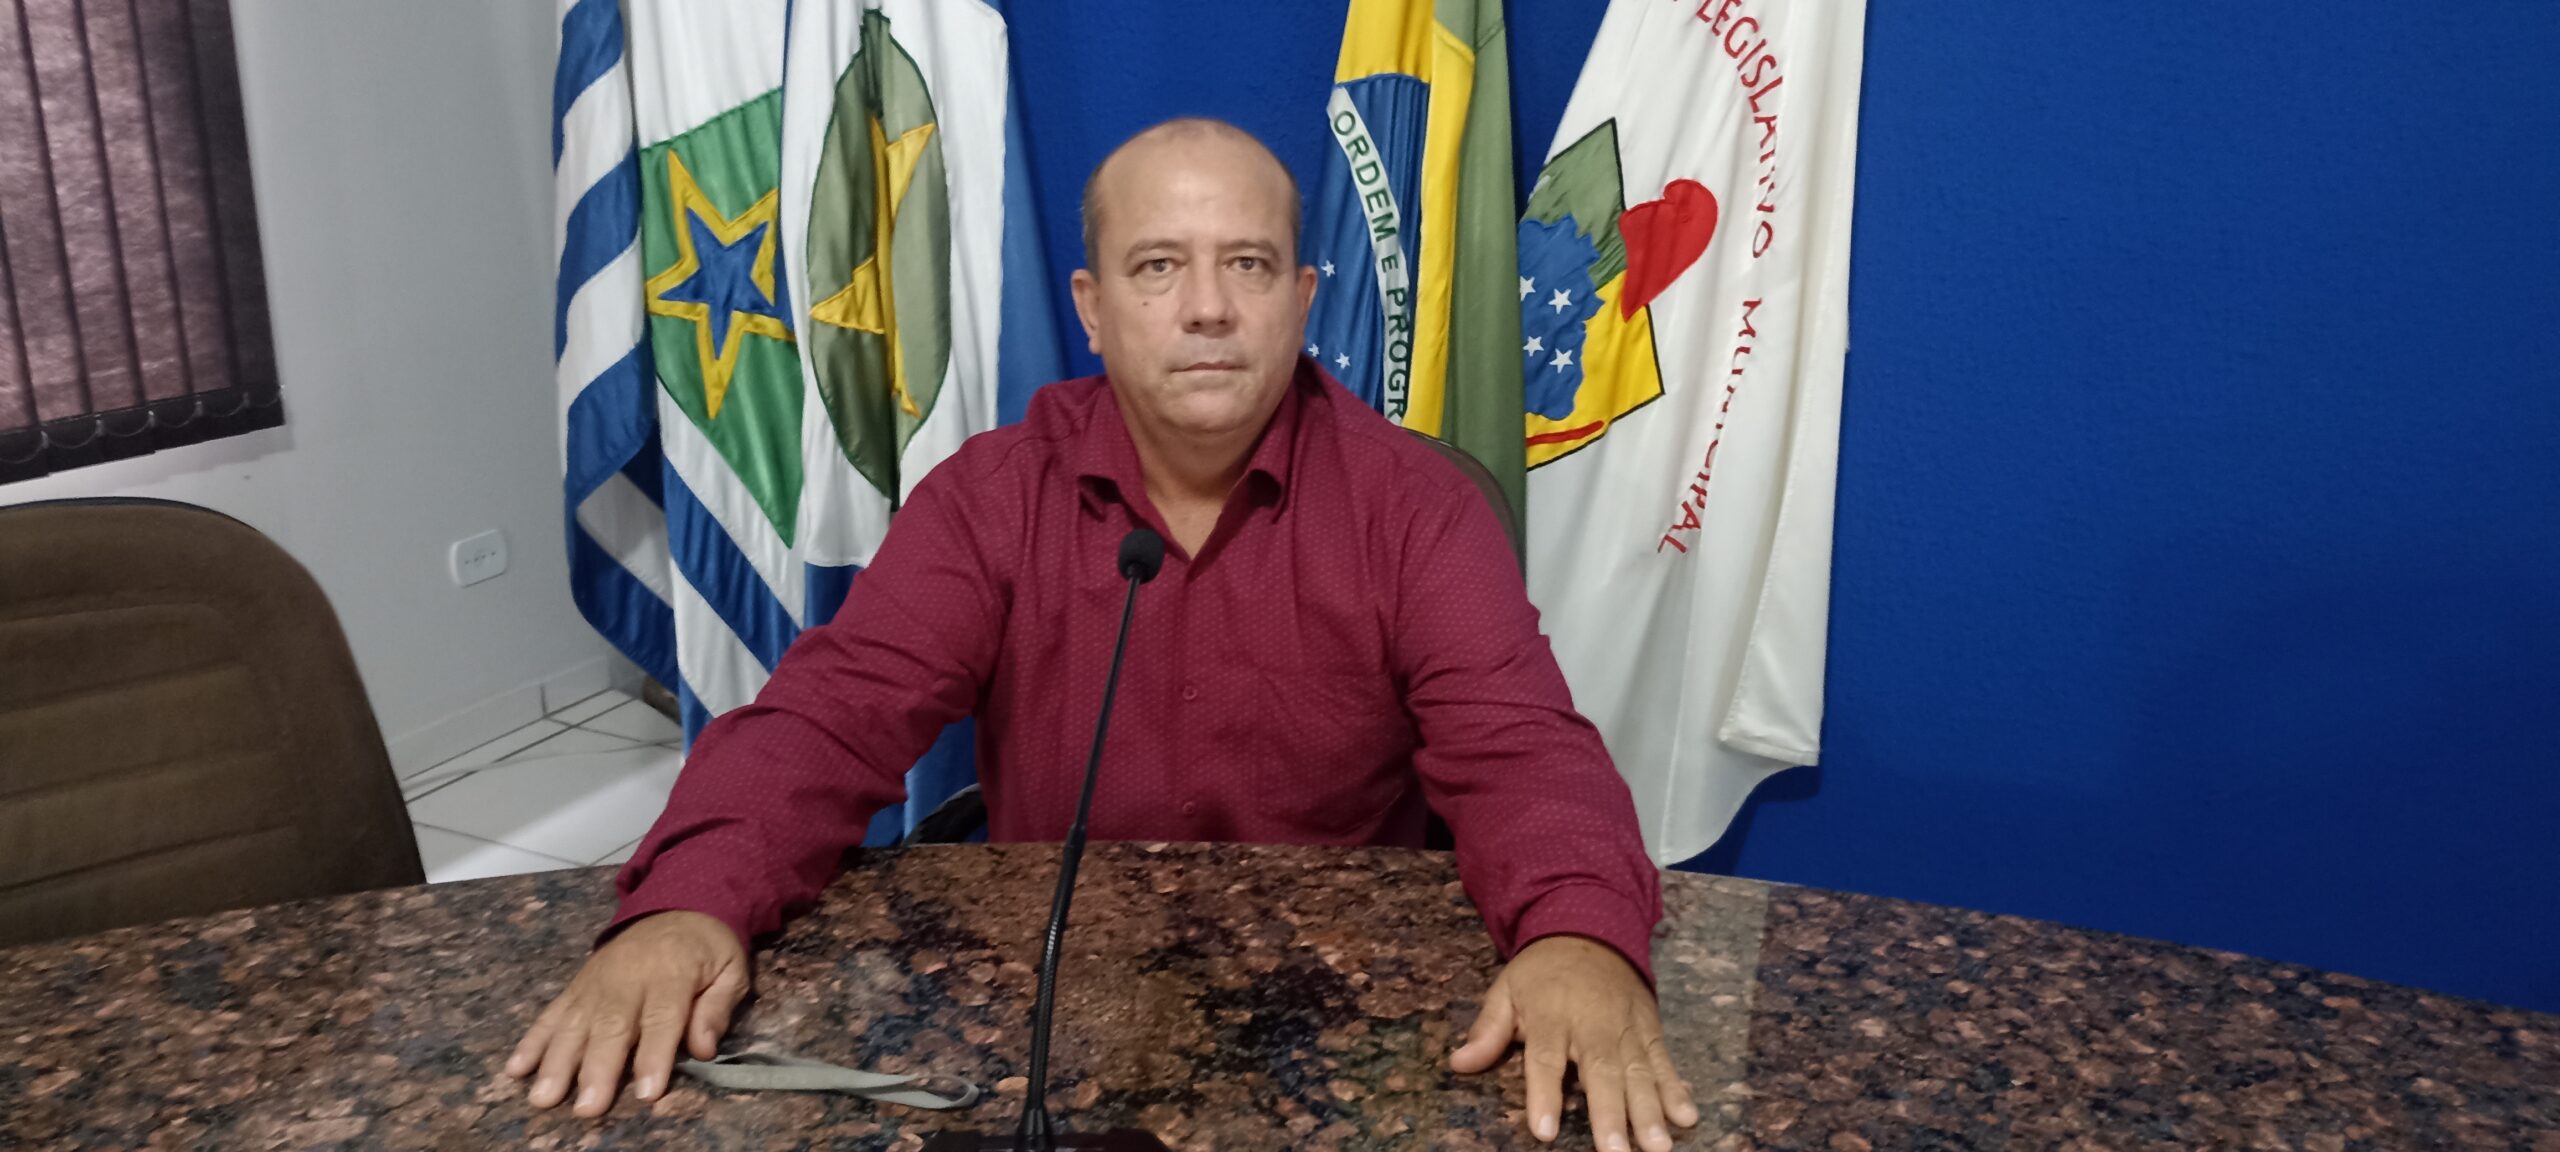 Vereador Gê lembra com orgulho, sua contribuição como presidente da Câmara de Figueirópolis D’Oeste